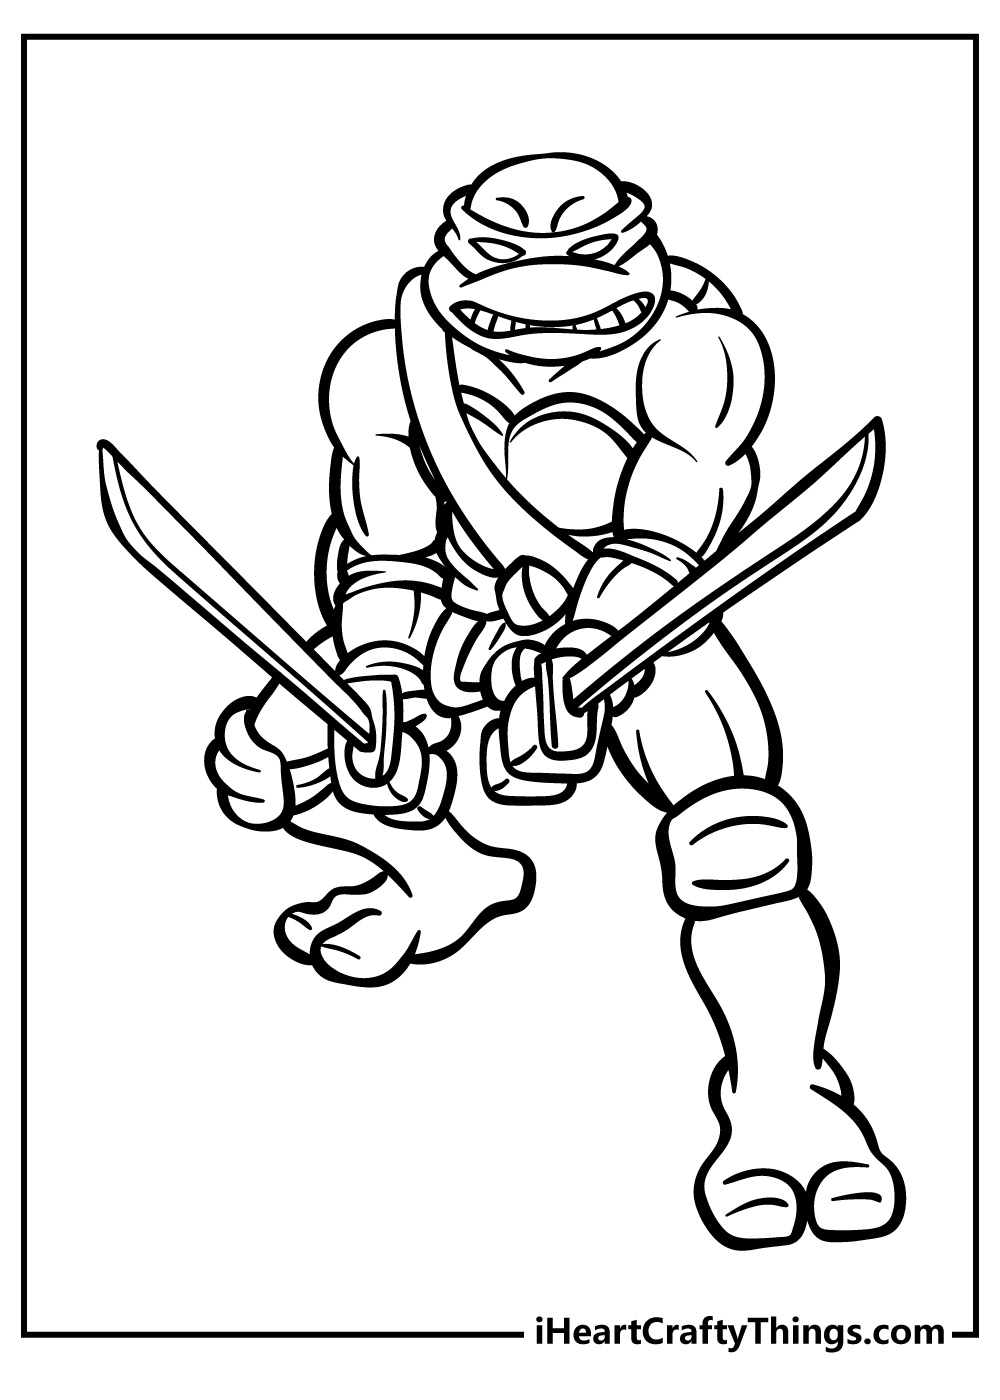 Ninja turtles coloring pages free printables